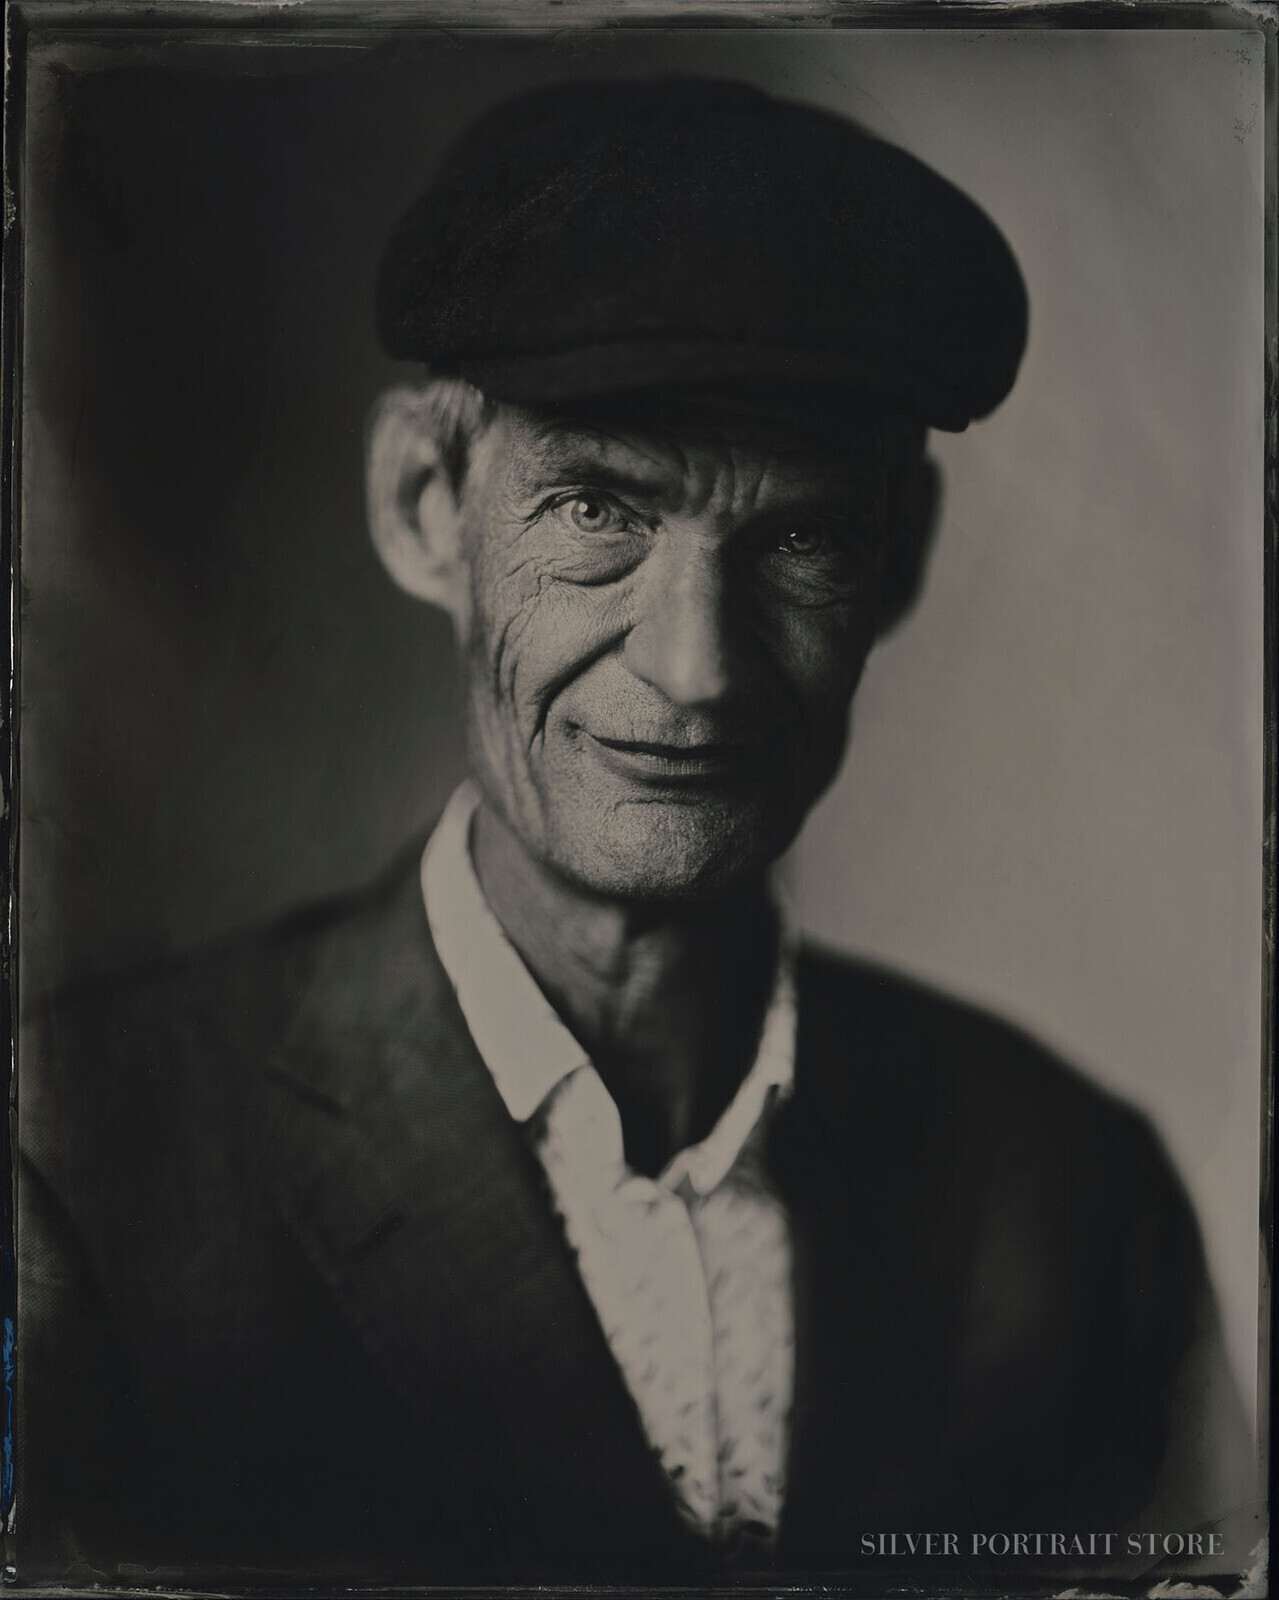 Michiel-Silver Portrait Store-Wet plate collodion-Tintype 20 x 25 cm.